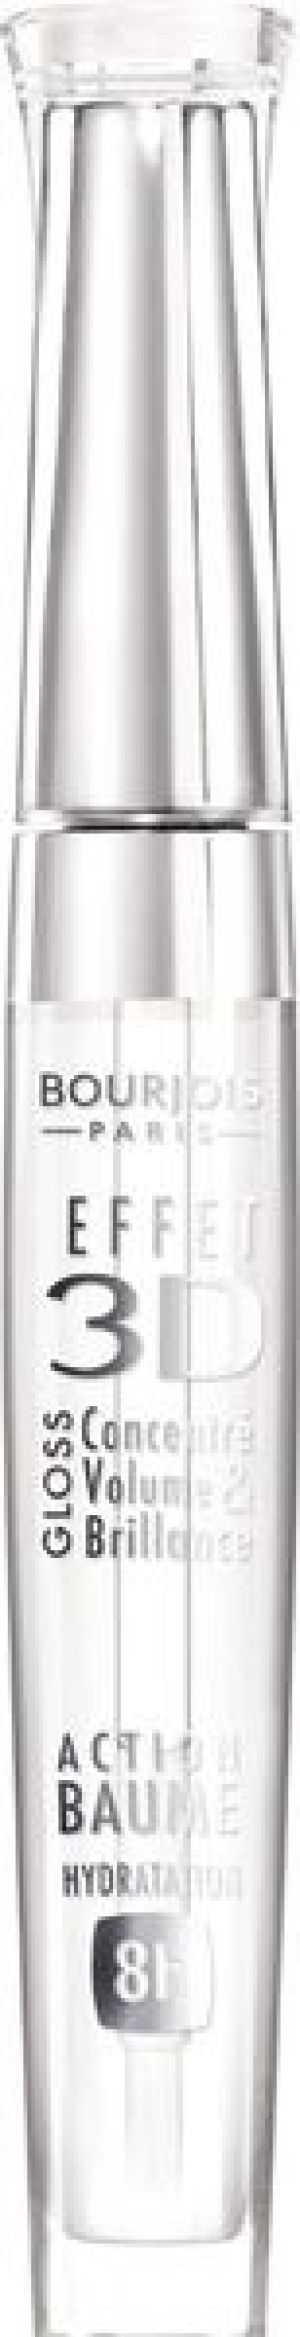 Bourjois Paris 3D Effet Gloss 18 Transparent 5.7ml 1